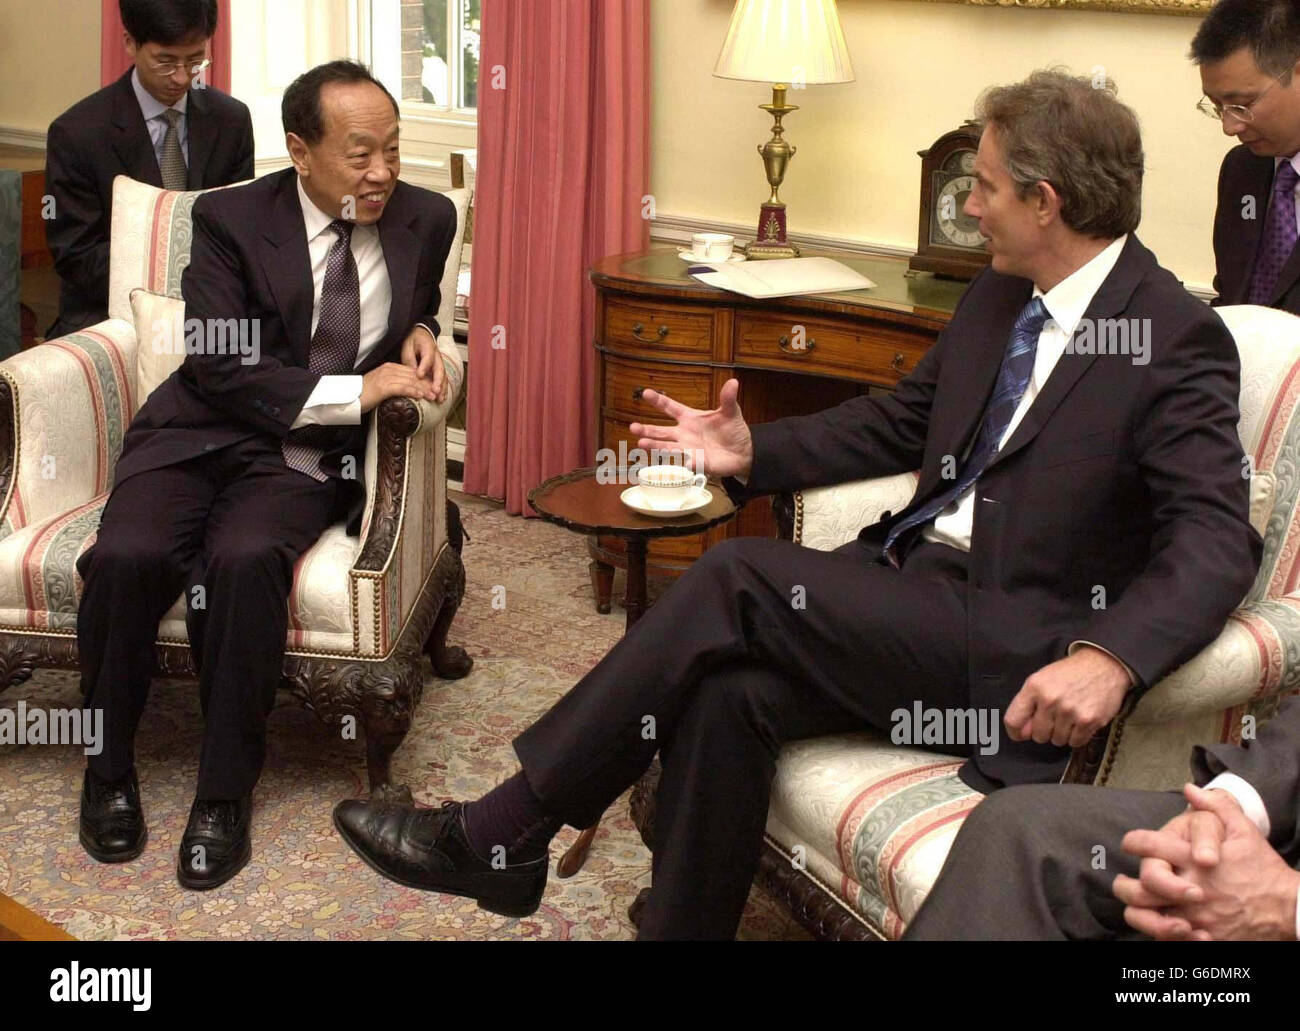 El Ministro de Relaciones Exteriores de China, Li Xhao Xing, se reúne con el primer Ministro británico, Tony Blair, en Downing Street, Londres. Foto de stock